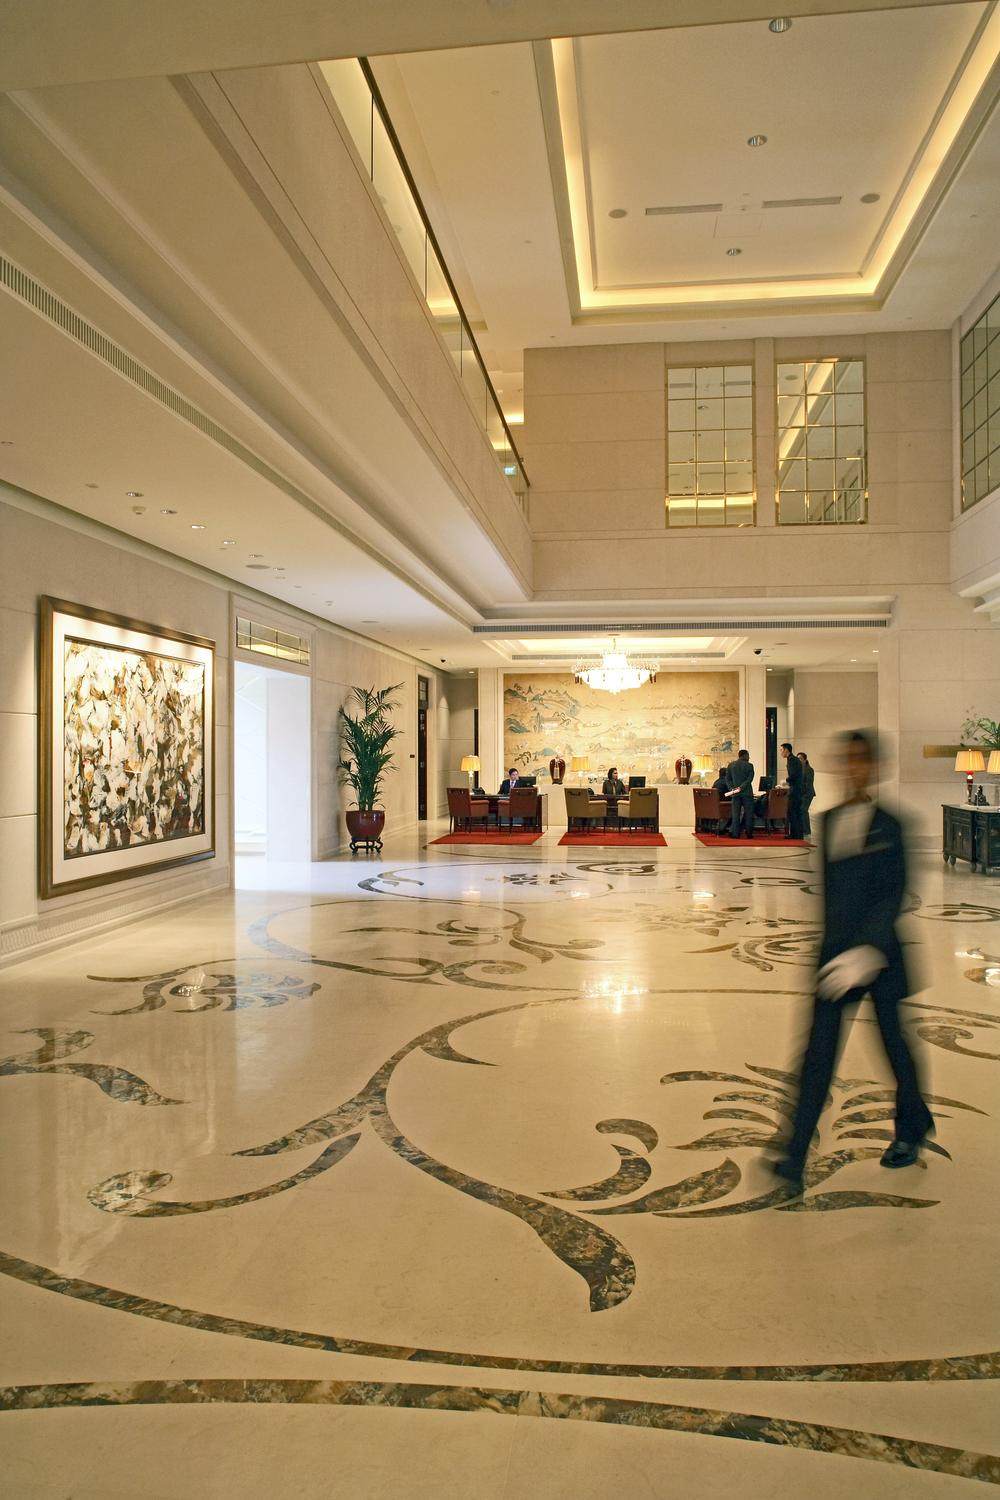 新加坡瑞吉酒店 he St. Regis Singapore_10)The St. Regis Singapore—The St. Regis Singapore Lobby 拍攝者.jpg